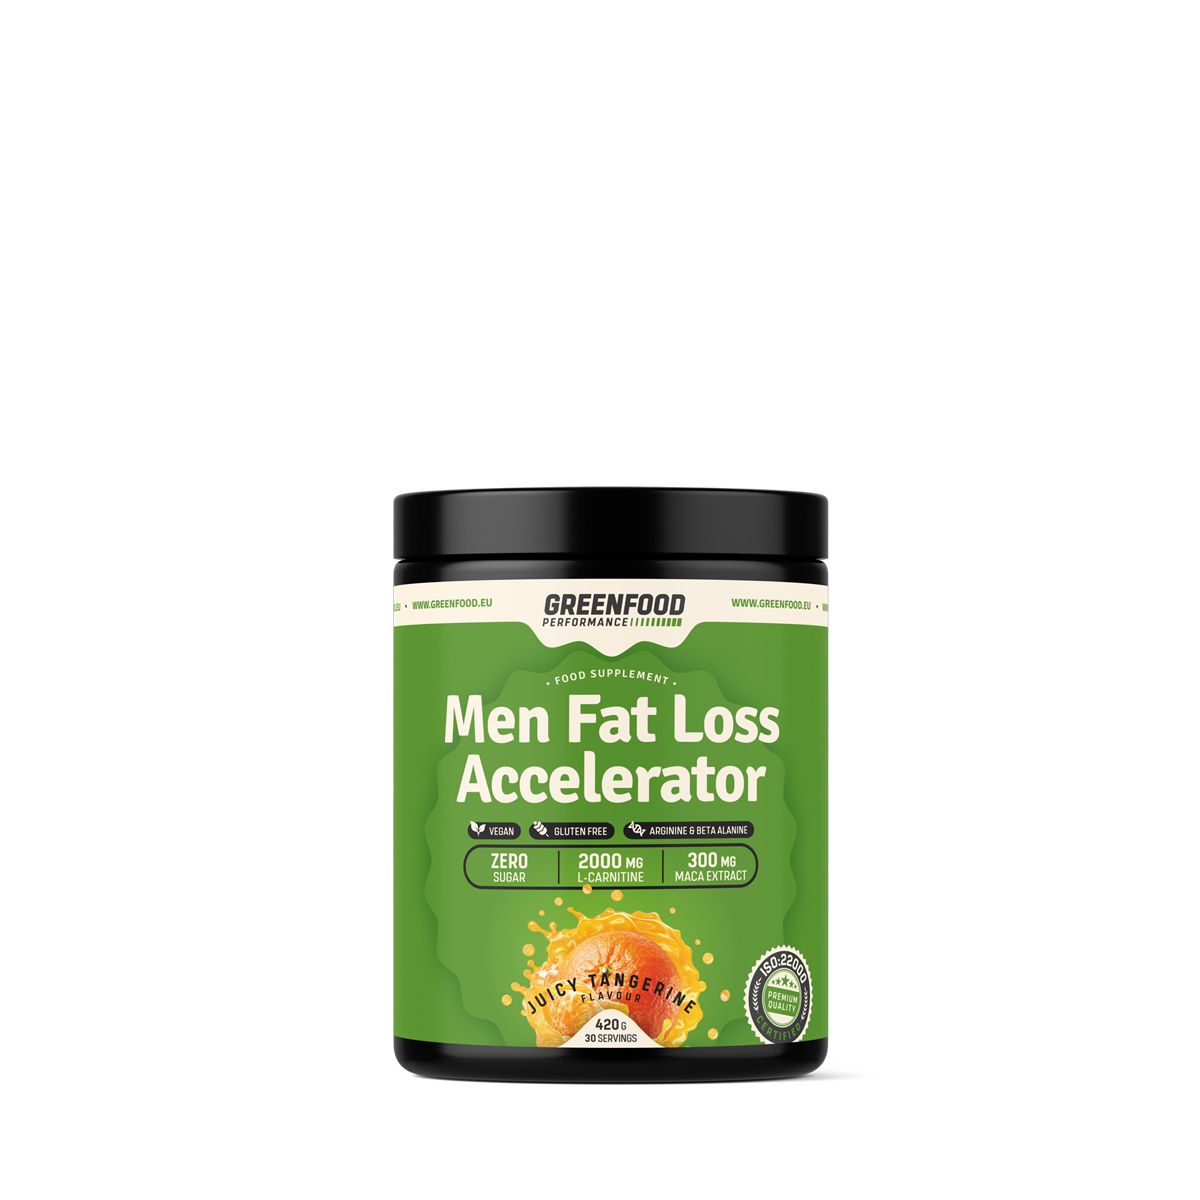 Férfi zsírégetést gyorsító italpor, GreenFood Performance Men Fat Loss Accelerator, 420 g